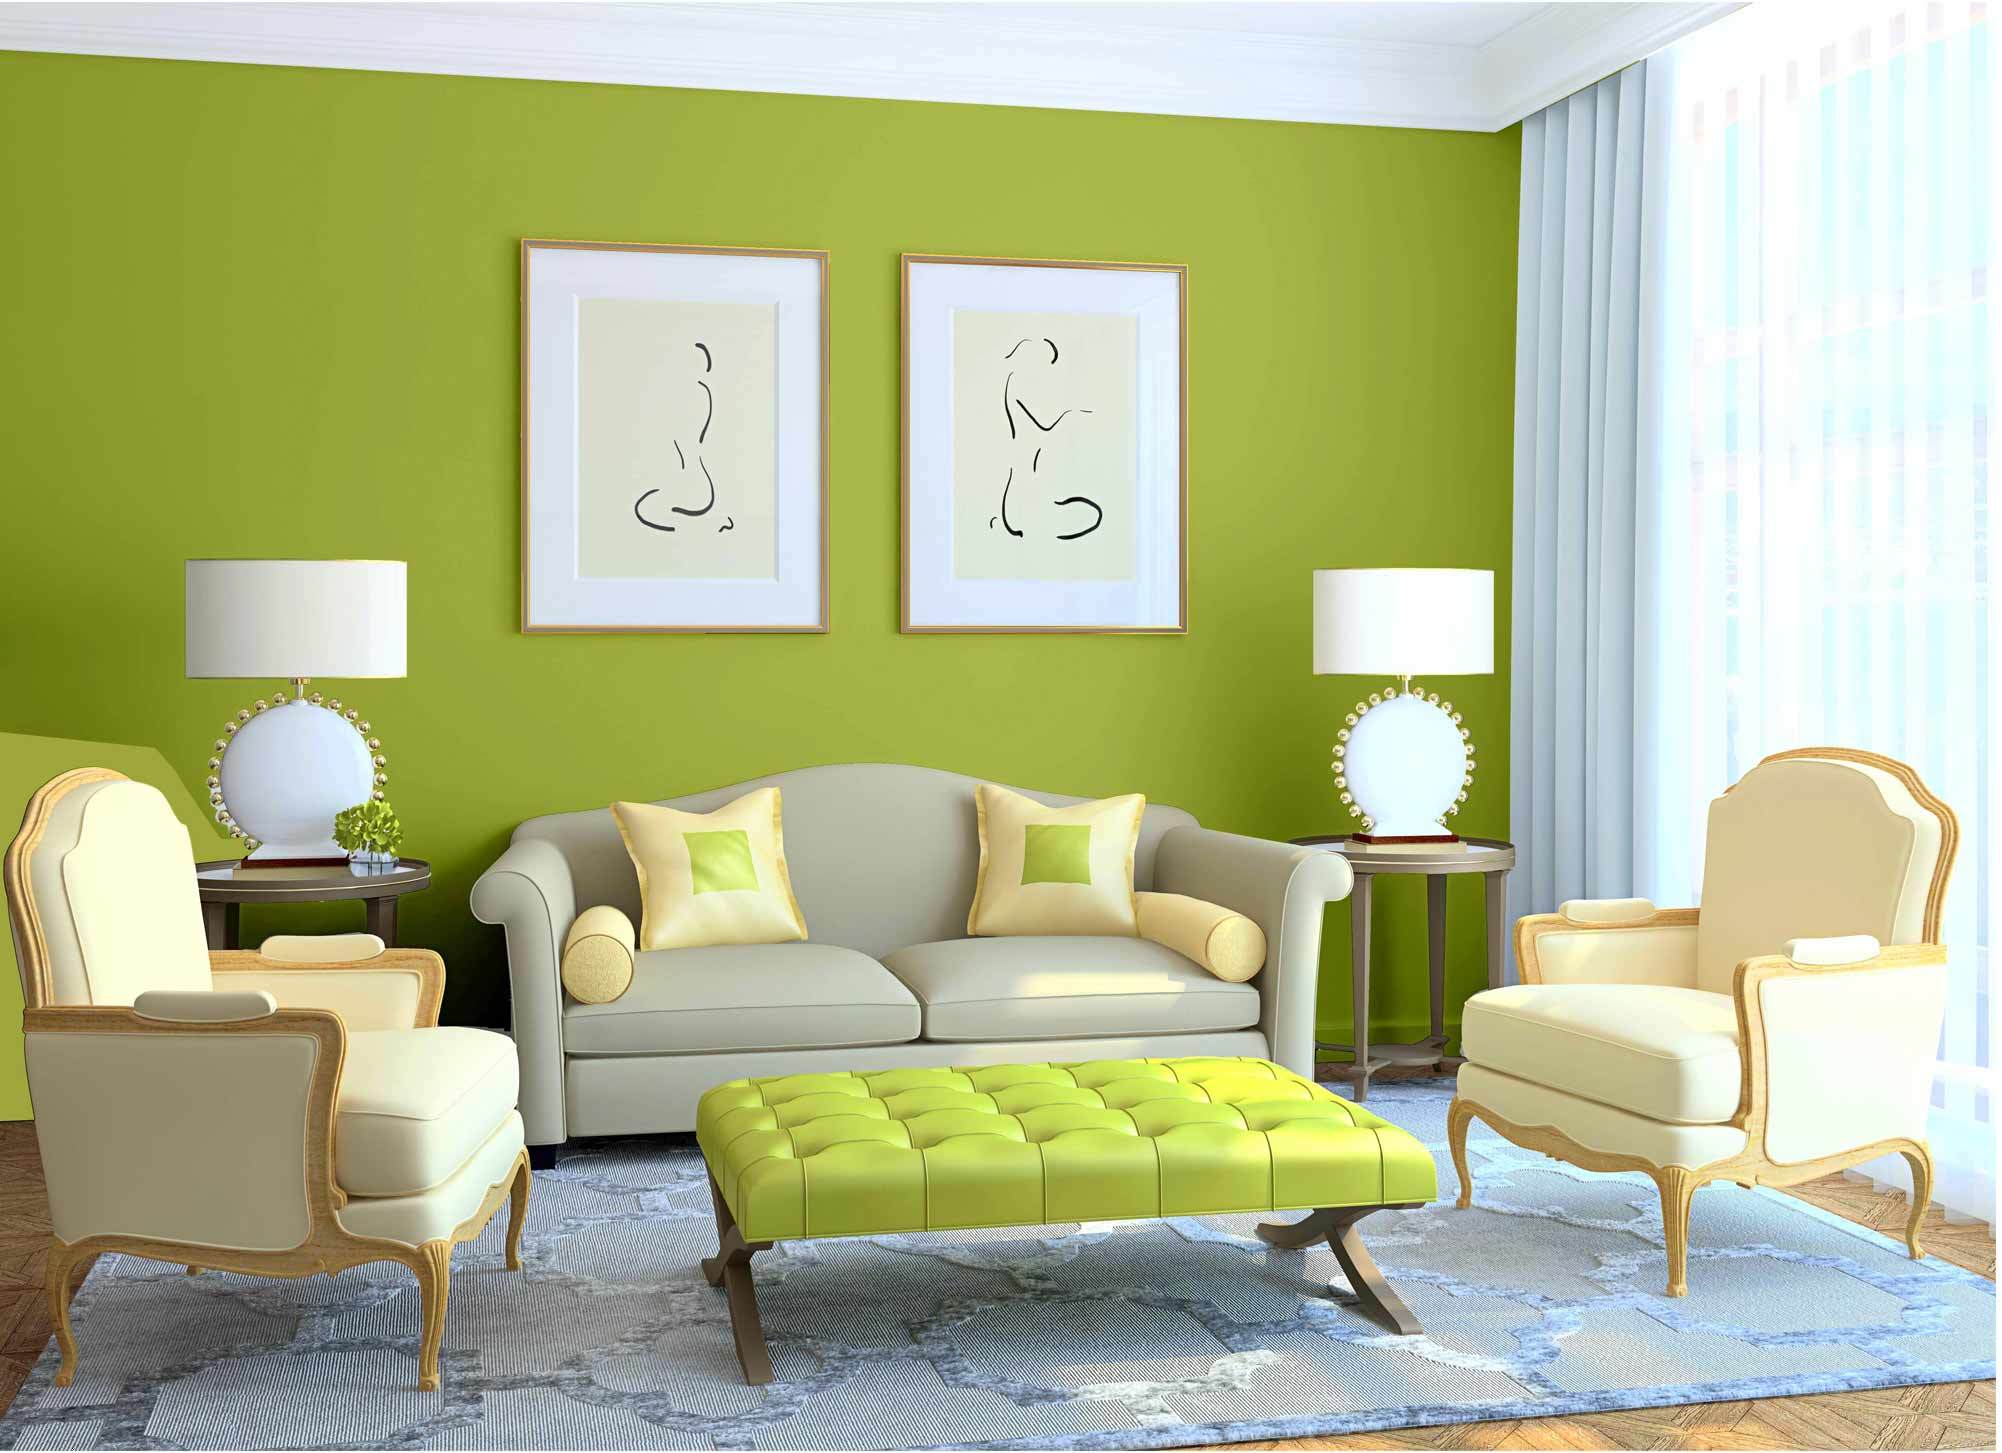 Северная комната: выбор цвета для дизайна интерьера, обои, мебель